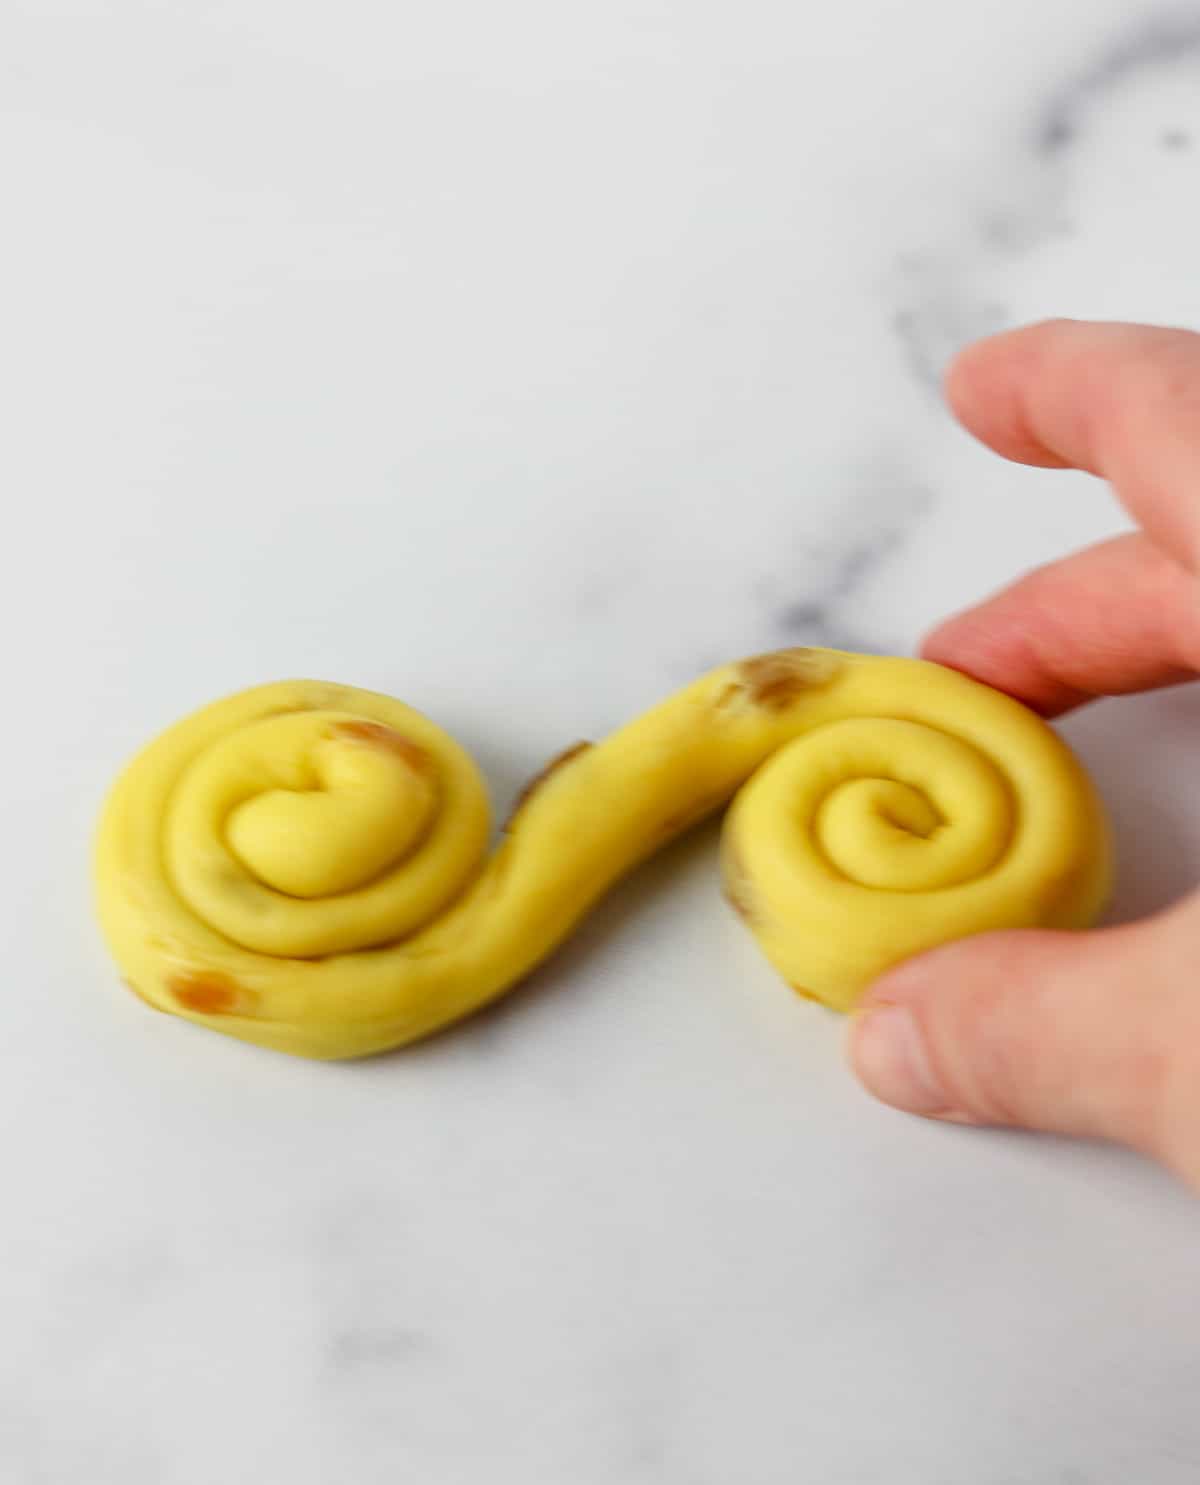 Saffron bun dough coiled up on a marble surface.